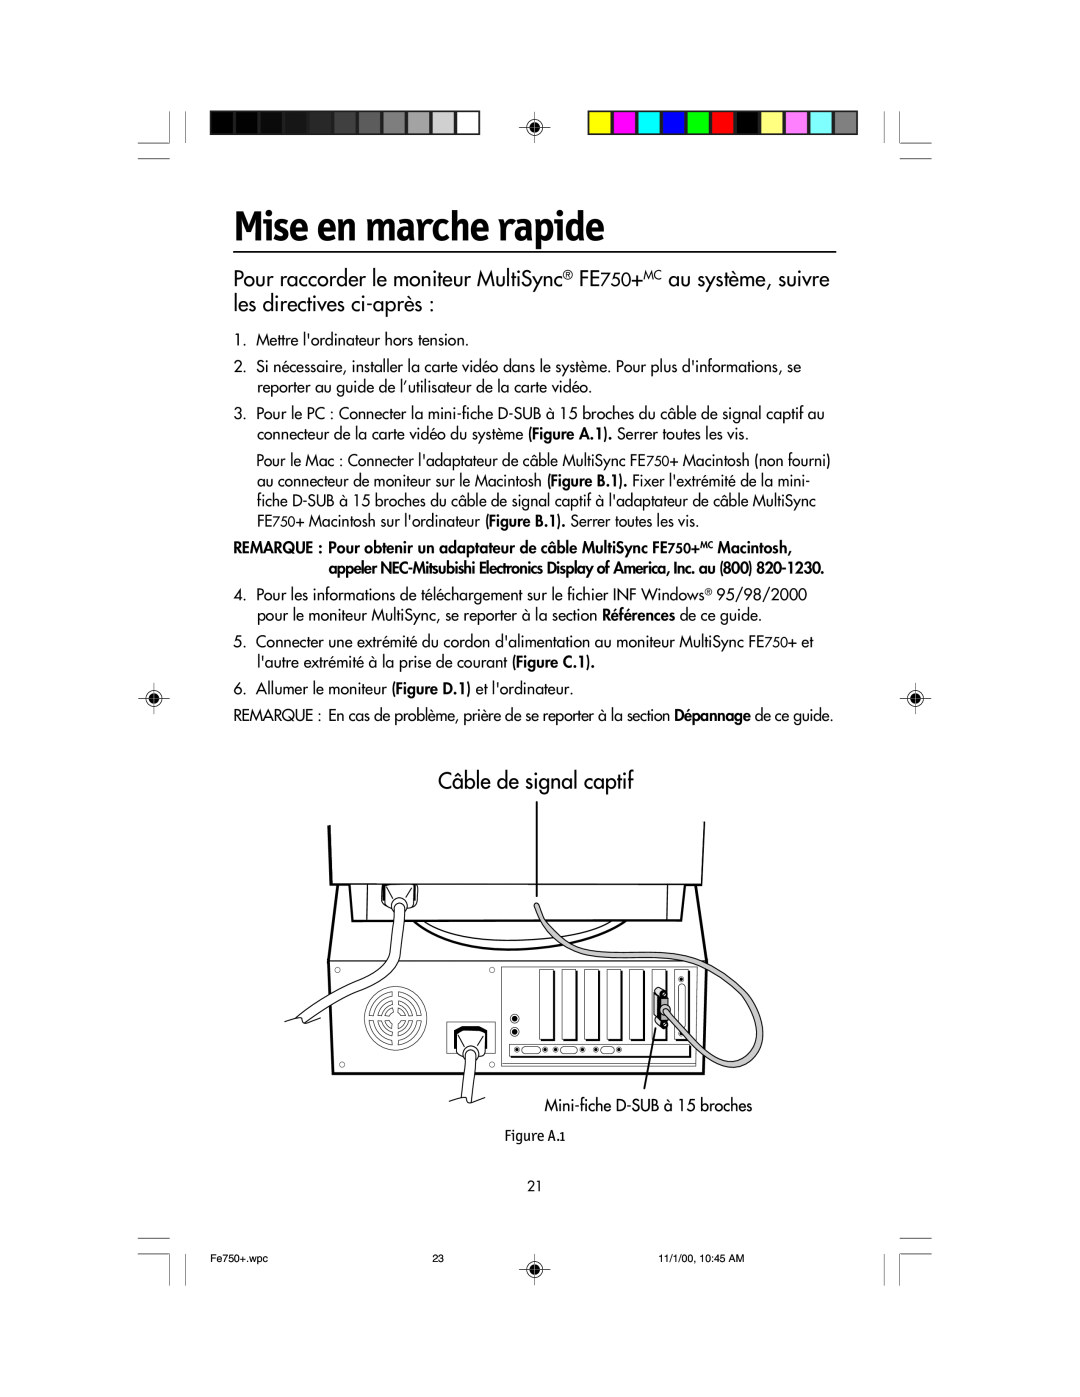 NEC FE750 Plus user manual Mise en marche rapide, Figure A.1 